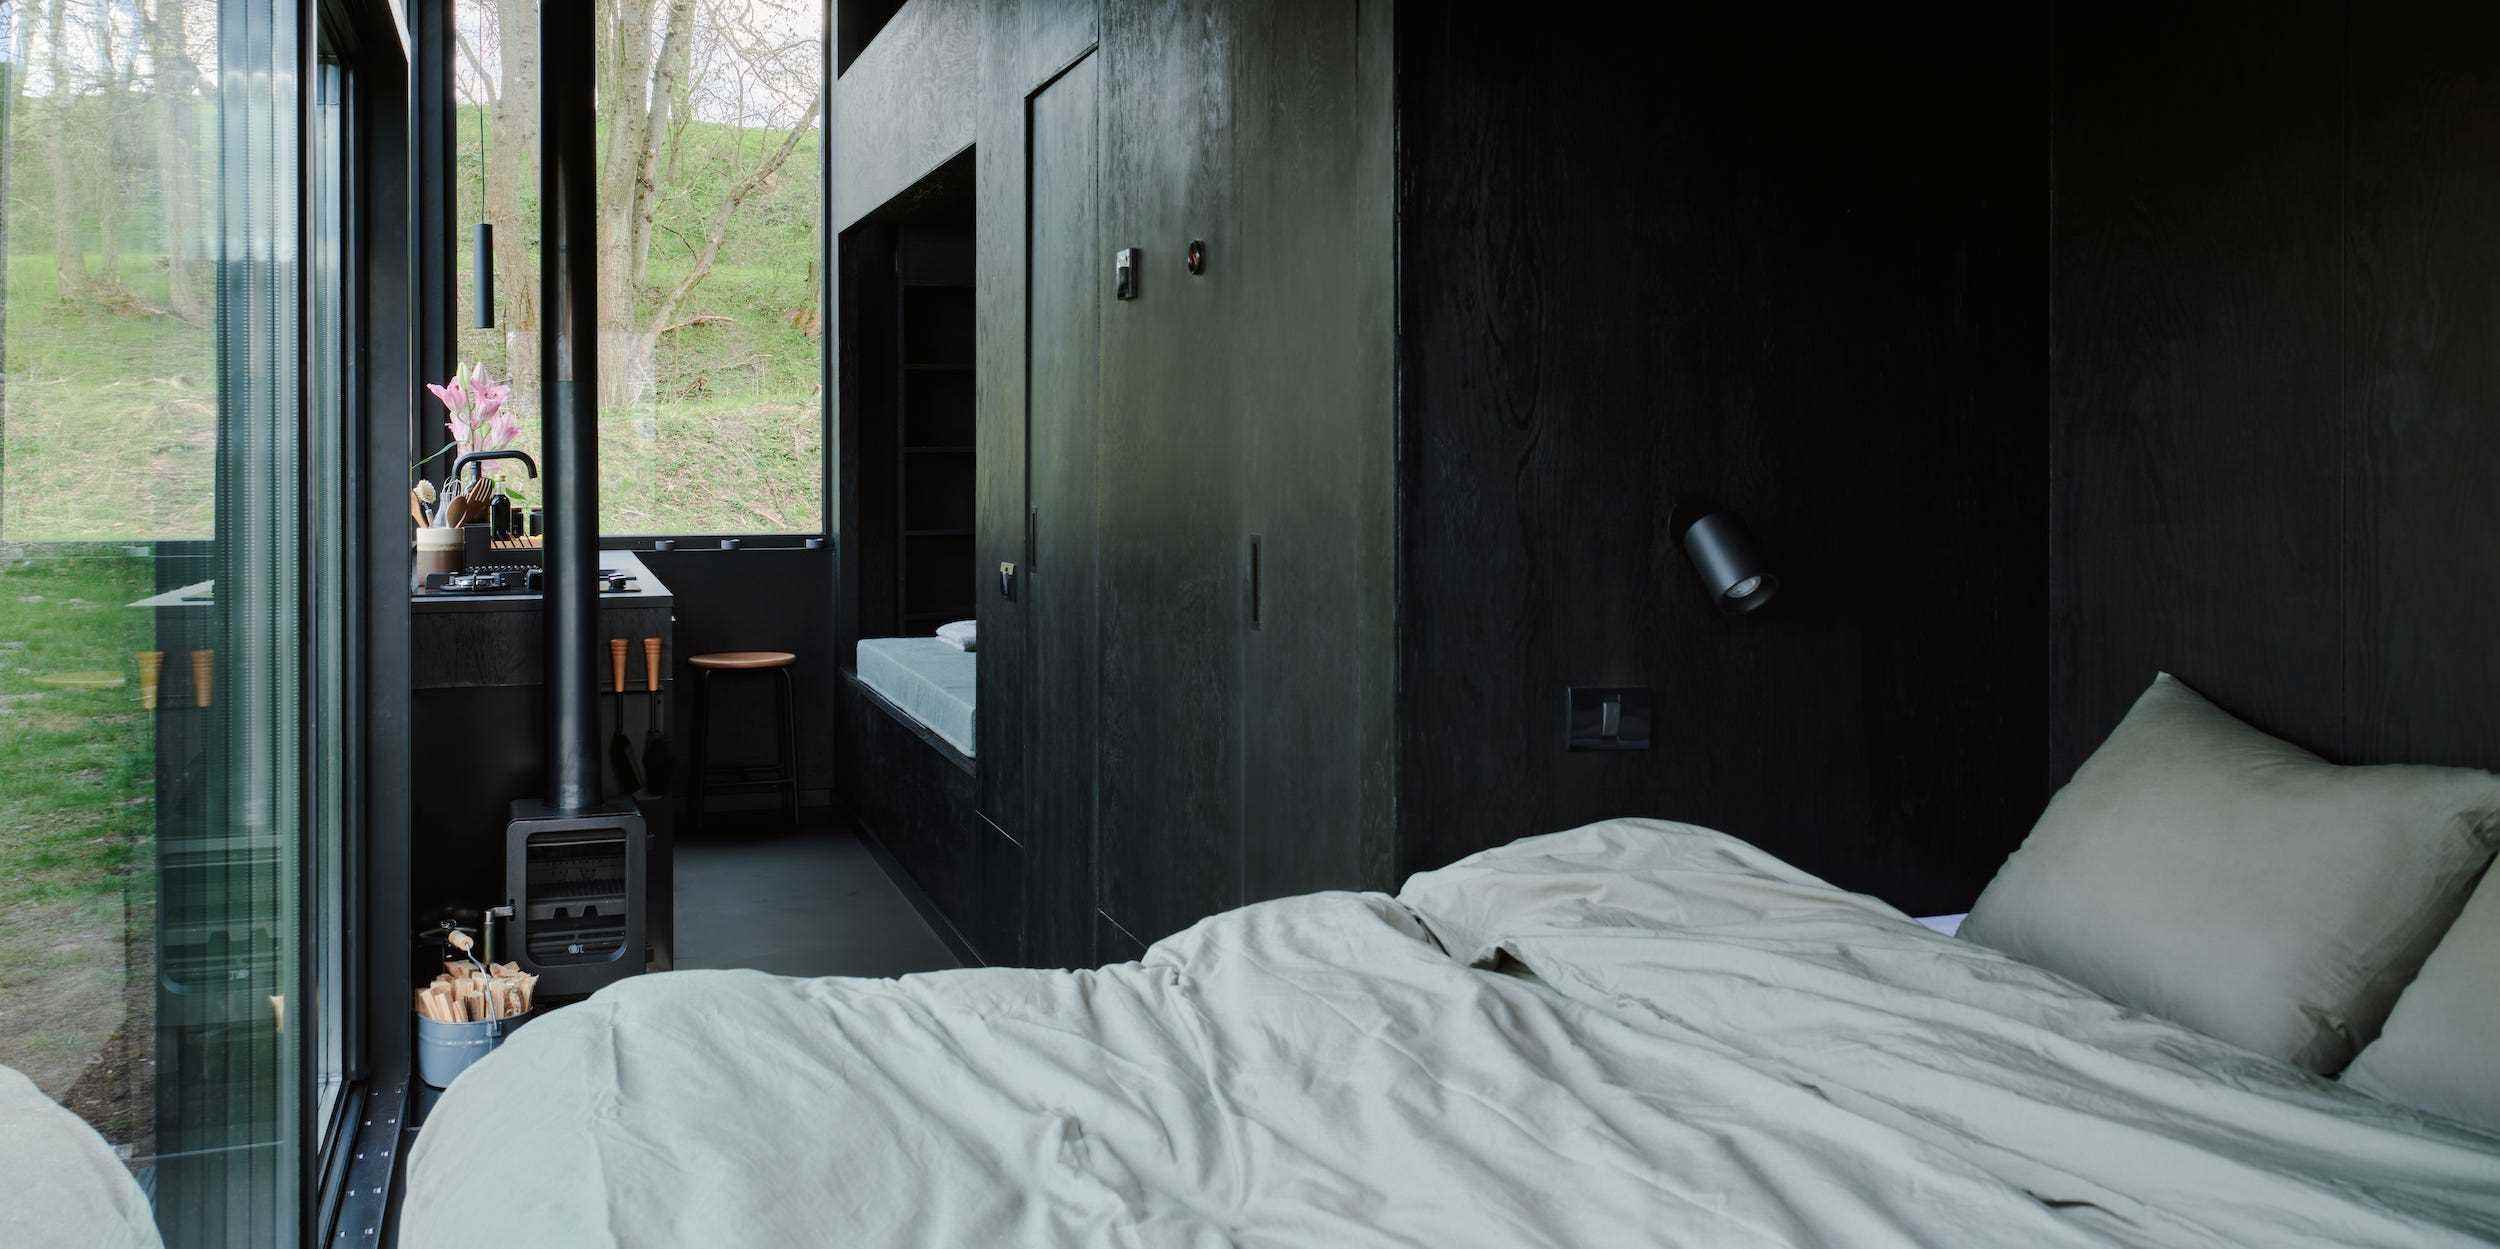 Ein Bett, eine Küche, ein Tagesbett mit Fenstern, die die Natur draußen zeigen